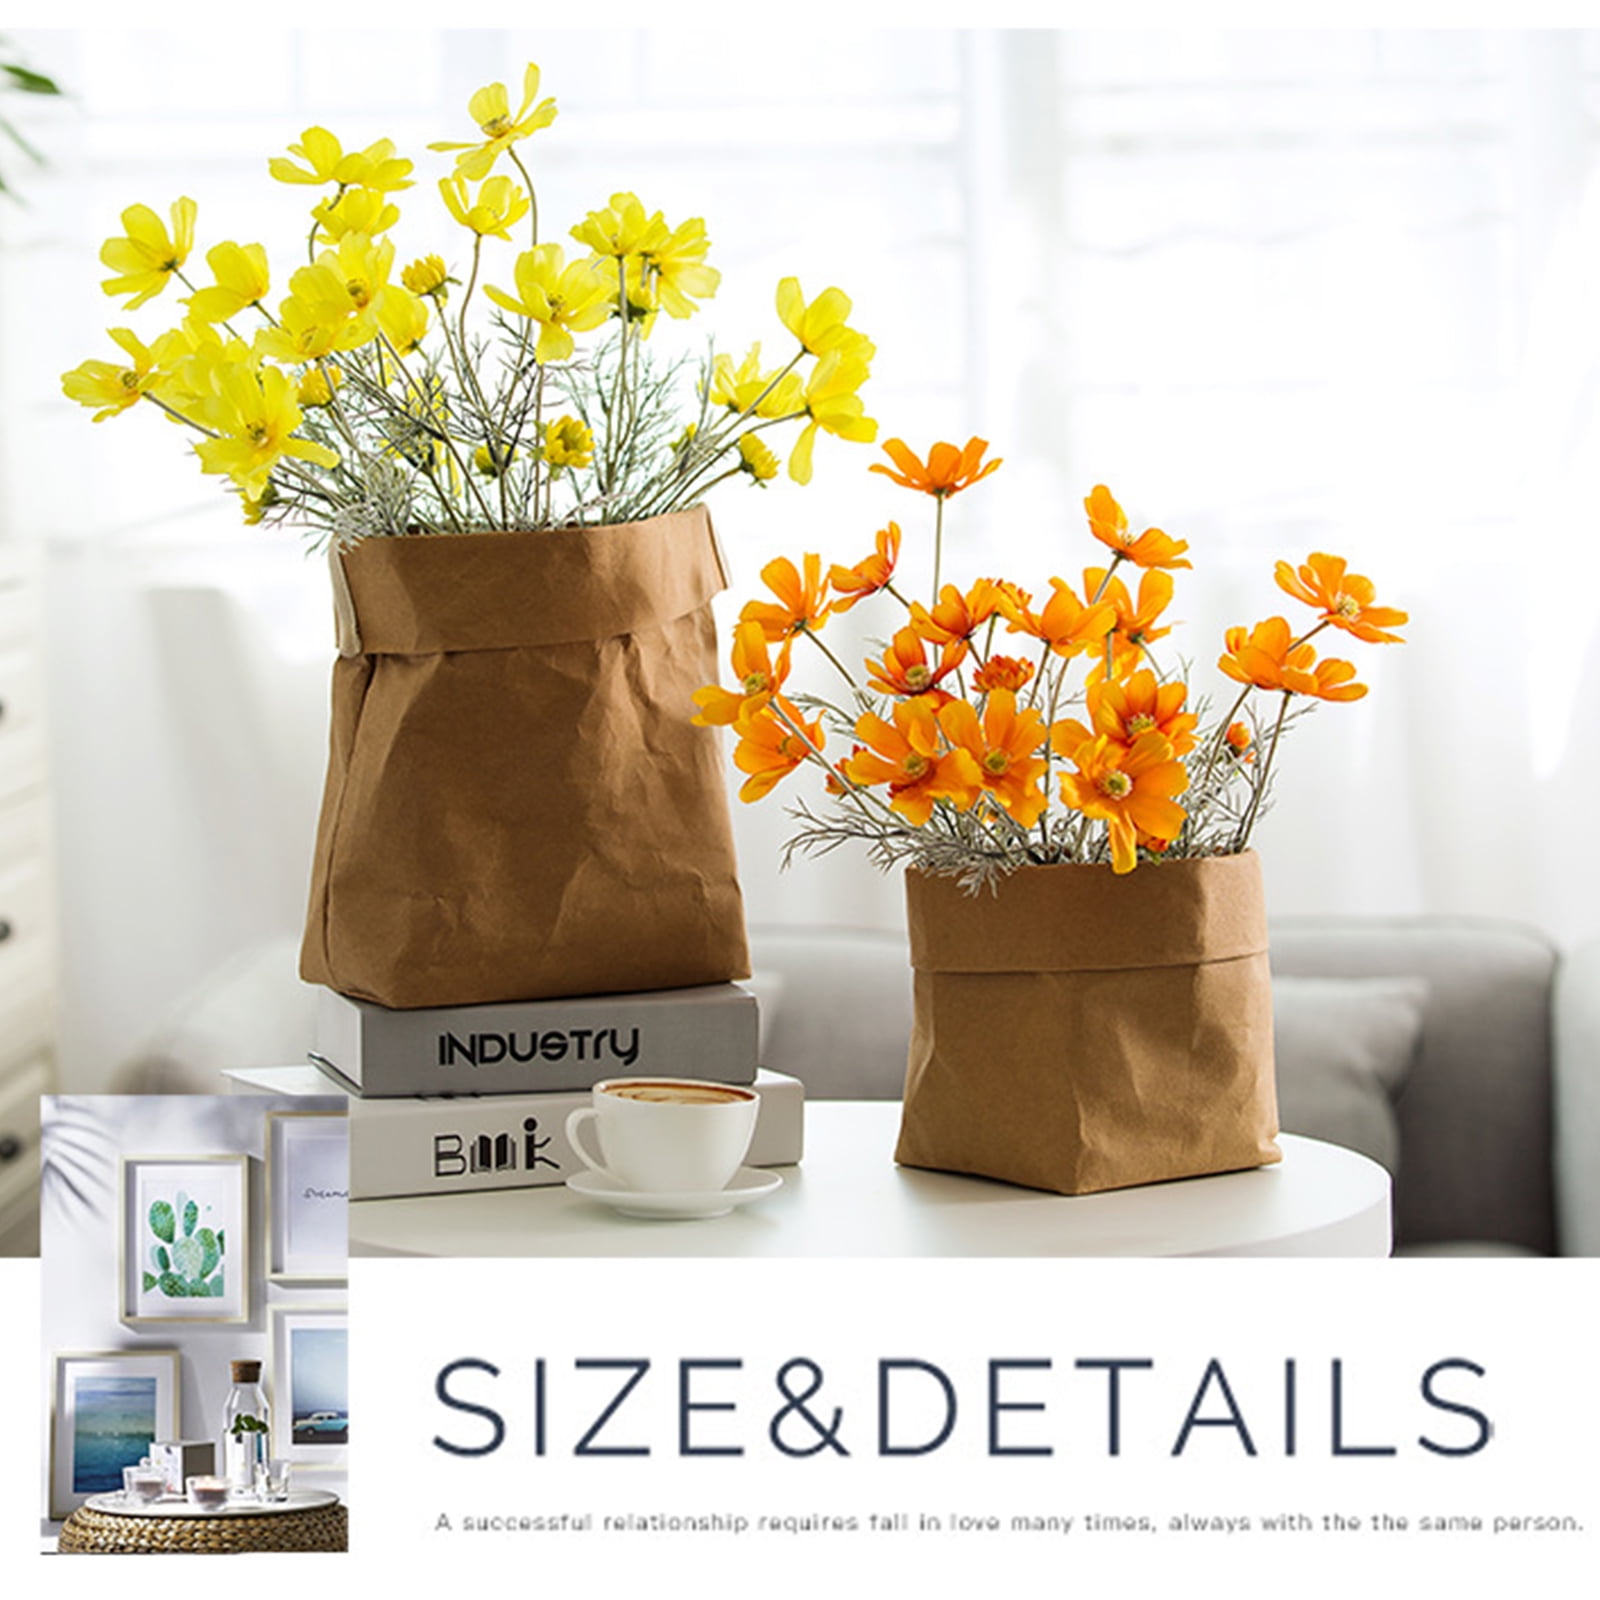 Flores secas de marigold real, flor peão, espécime botânico decorativo, gel  do gotejamento, materiais DIY, 12pcs - AliExpress